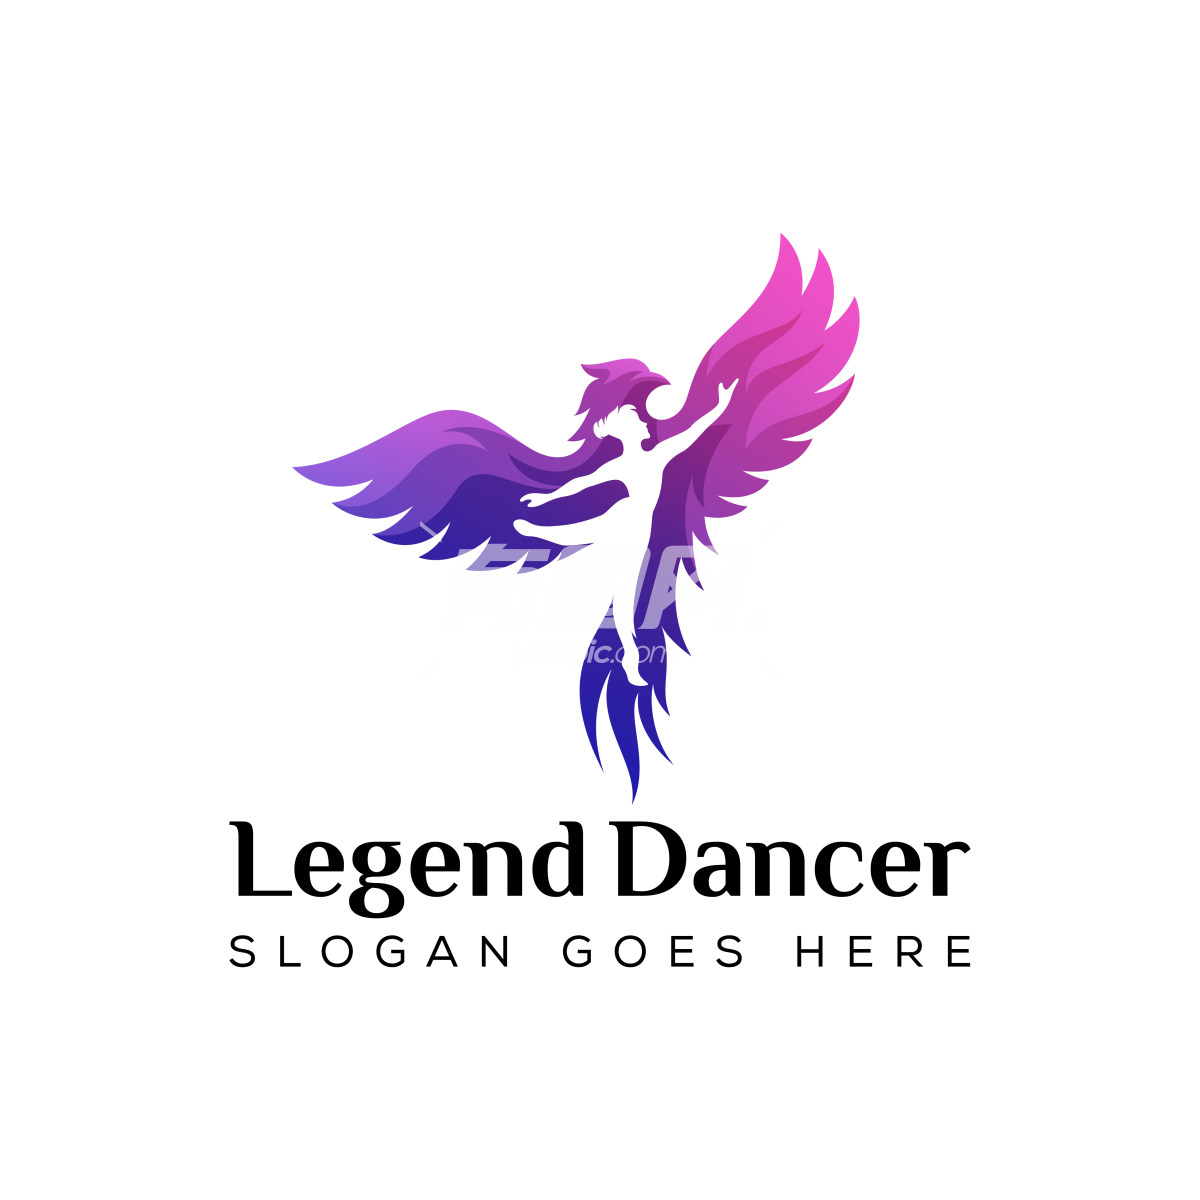 Legend Dancer的logo设计